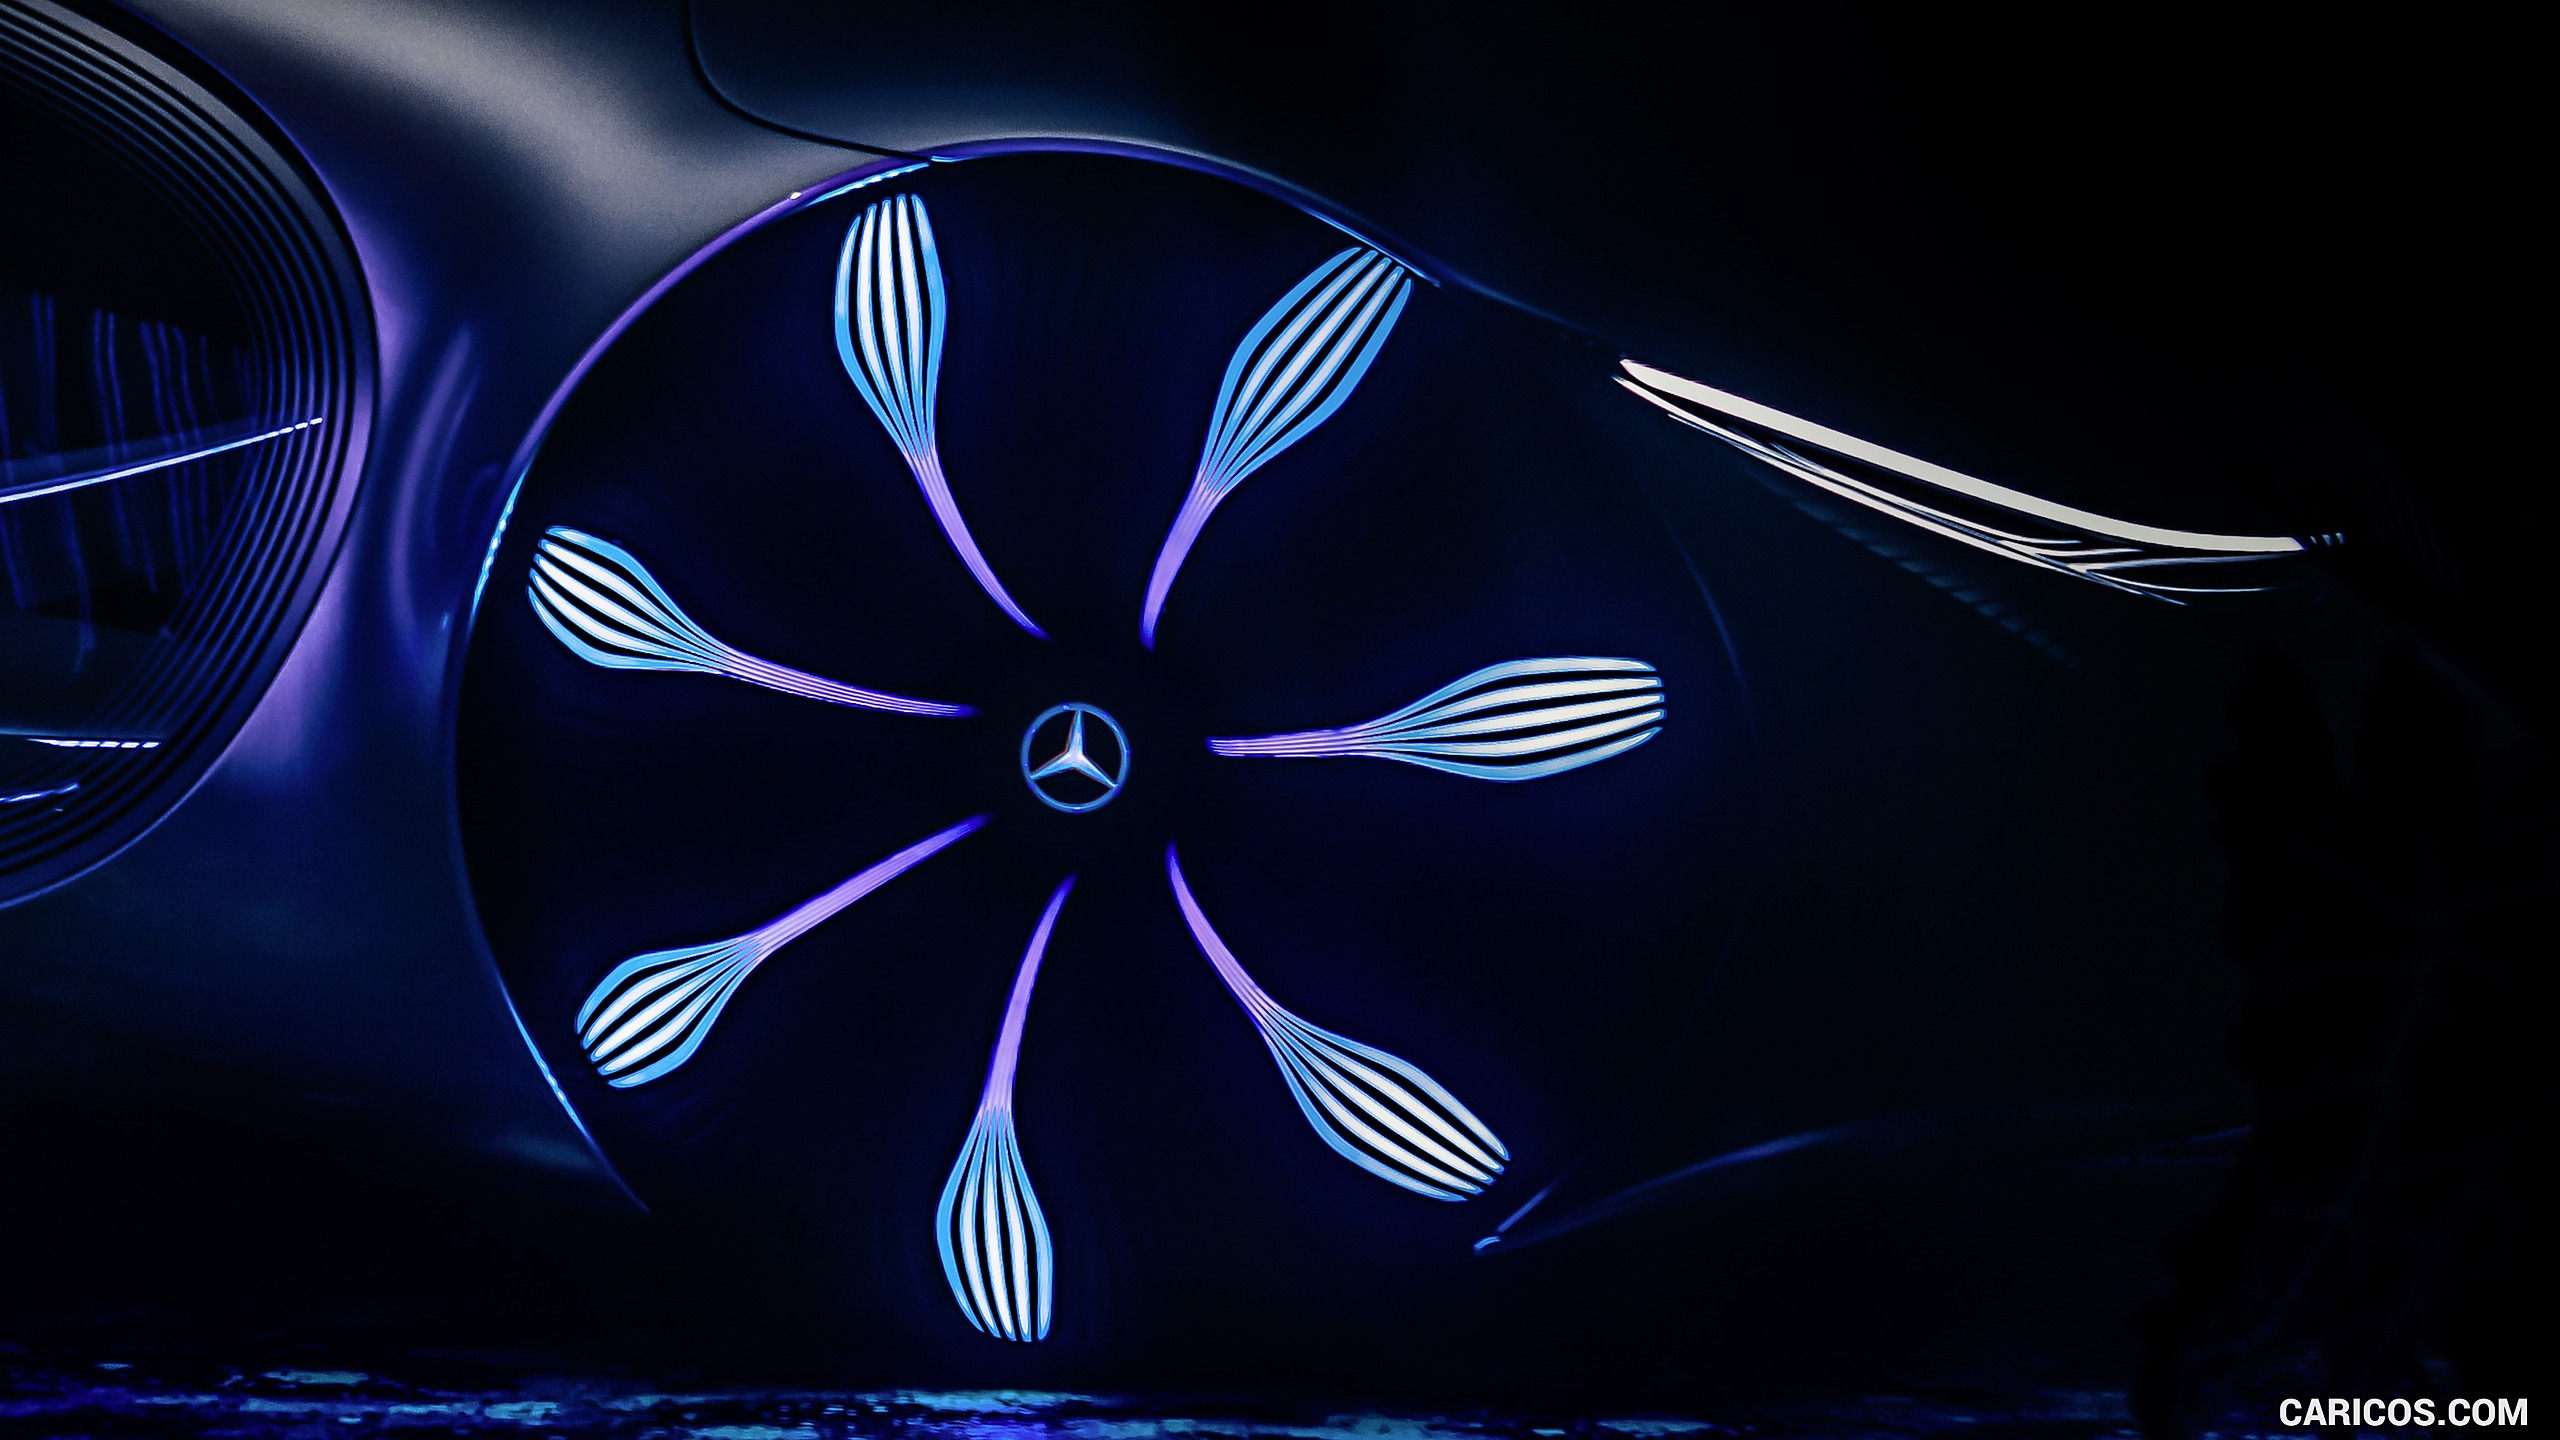 2020 Mercedes-Benz VISION AVTR Concept - Wheel, #27 of 60